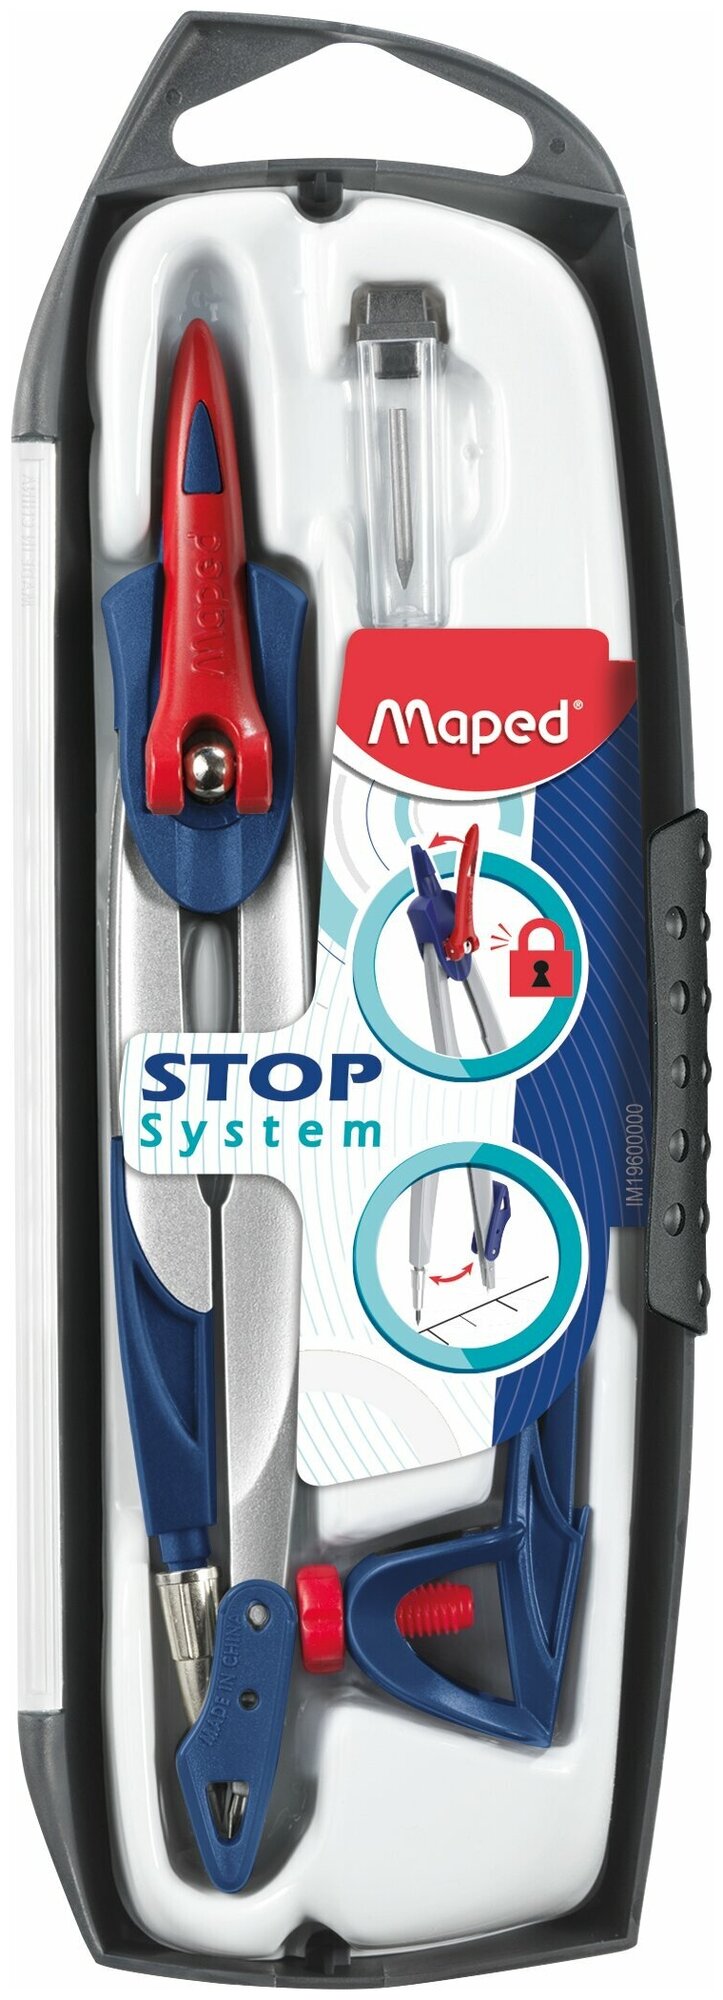 Готовальня для чертежных работ MAPED Stop System 3 предмета, синяя